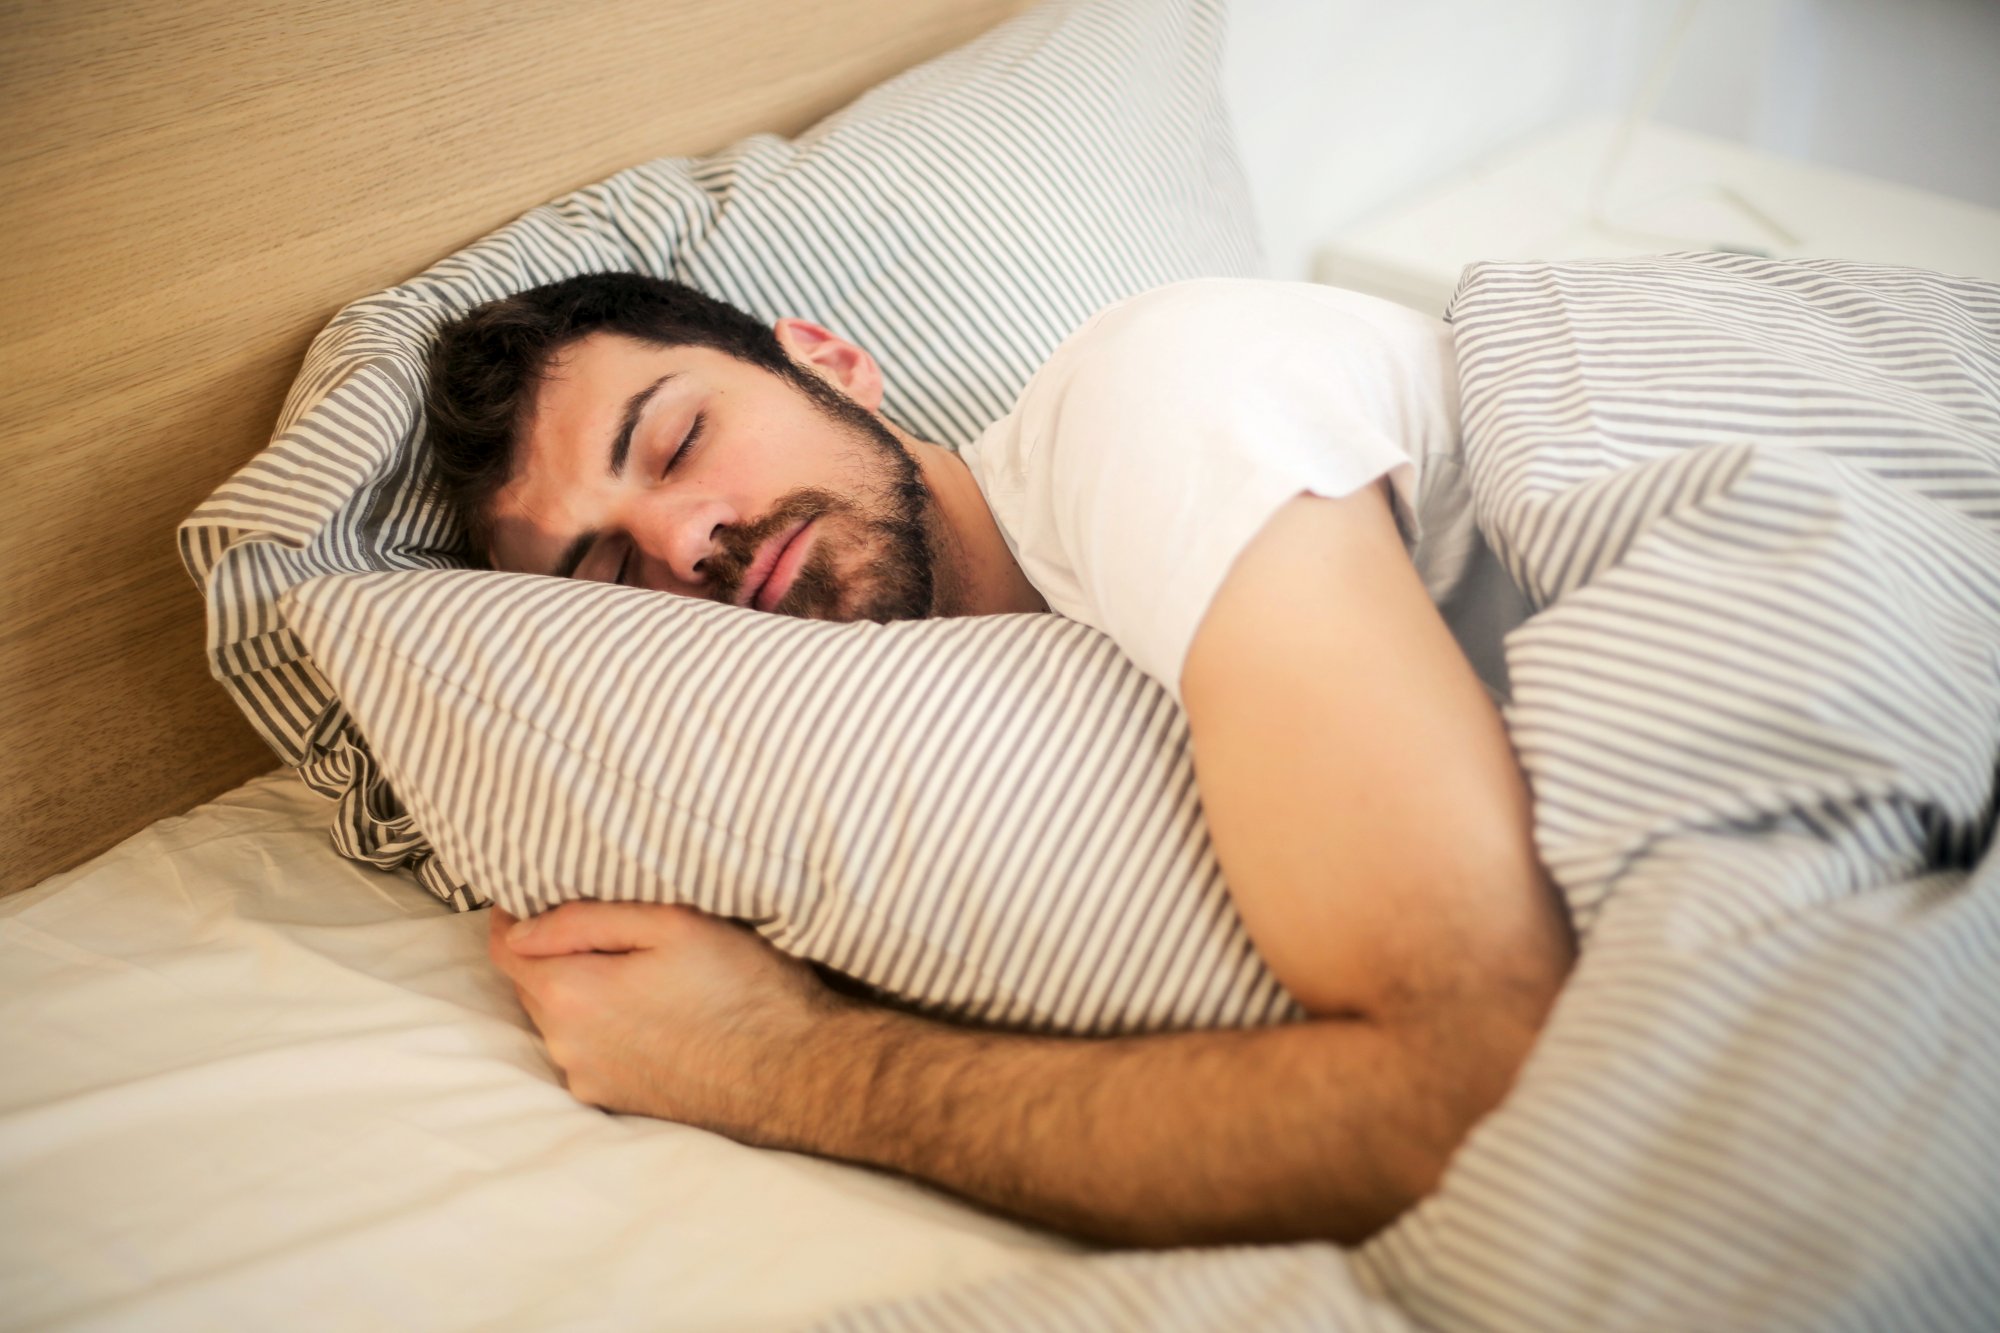 Τα ροφήματα που προκαλούν αϋπνία – Με τι μπορείτε να τα αντικαταστήσετε